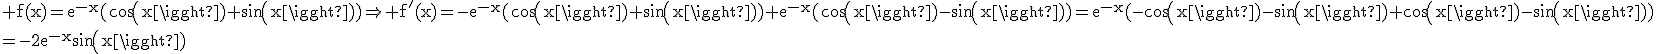 3$\rm f(x)=e^{-x}(cos(x)+sin(x))\Rightarrow f'(x)=-e^{-x}(cos(x)+sin(x))+e^{-x}(cos(x)-sin(x))=e^{-x}(-cos(x)-sin(x)+cos(x)-sin(x))\\=-2e^{-x}sin(x)